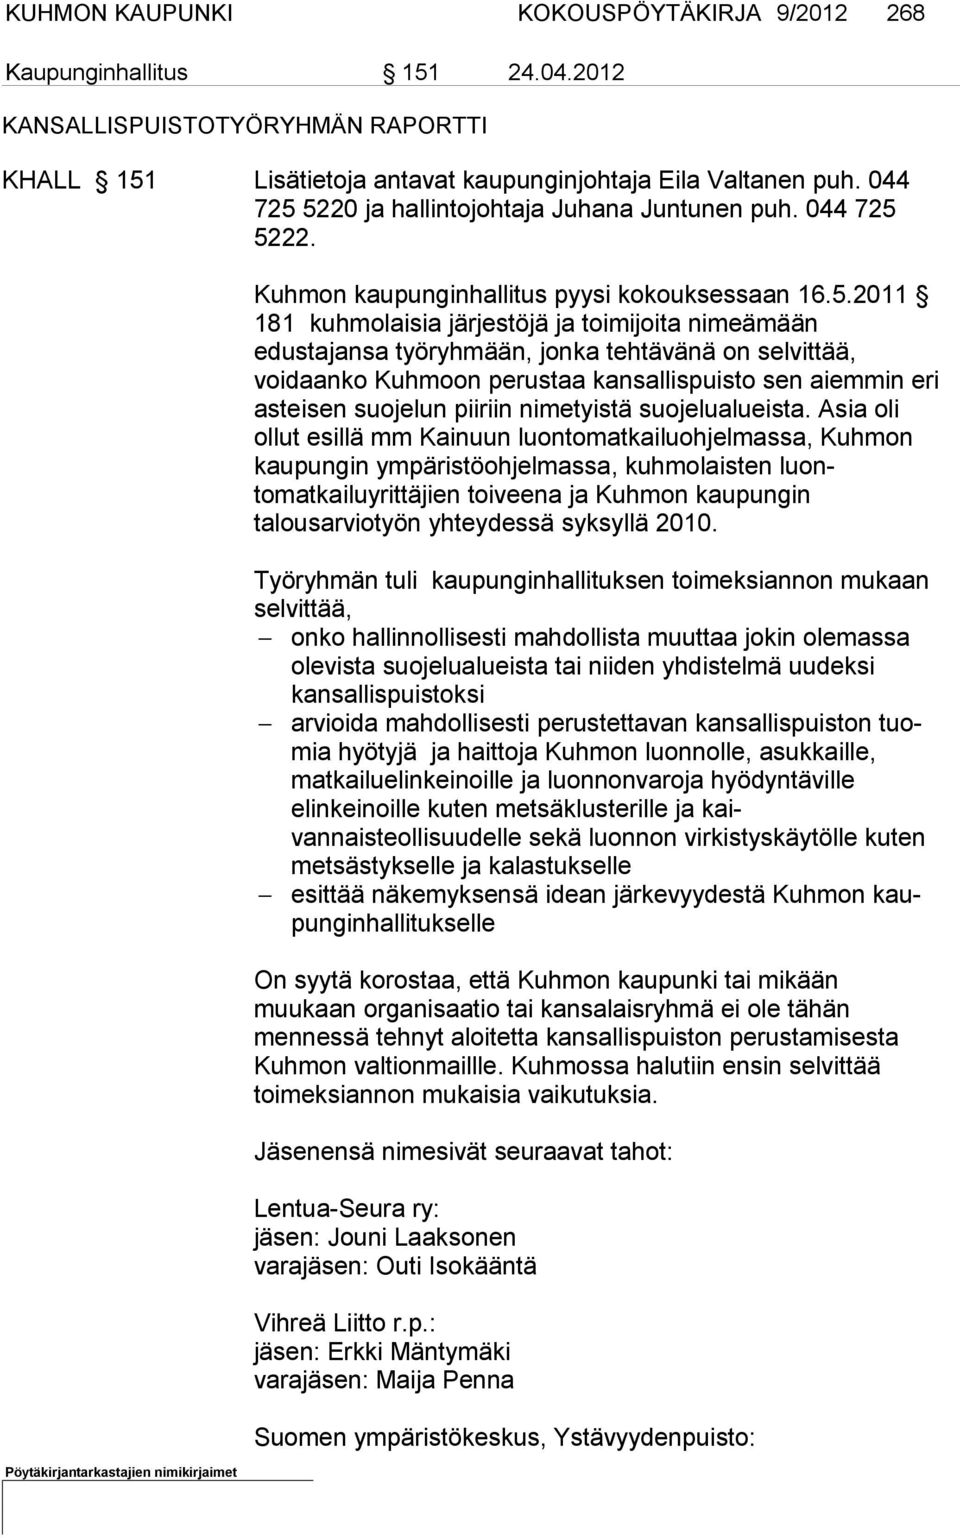 5220 ja hallintojohtaja Juhana Juntunen puh. 5222. Kuhmon kaupunginhallitus pyysi kokouksessaan 16.5.2011 181 kuhmolaisia järjestöjä ja toimijoita nimeämään edustajansa työryh mään, jonka tehtävänä